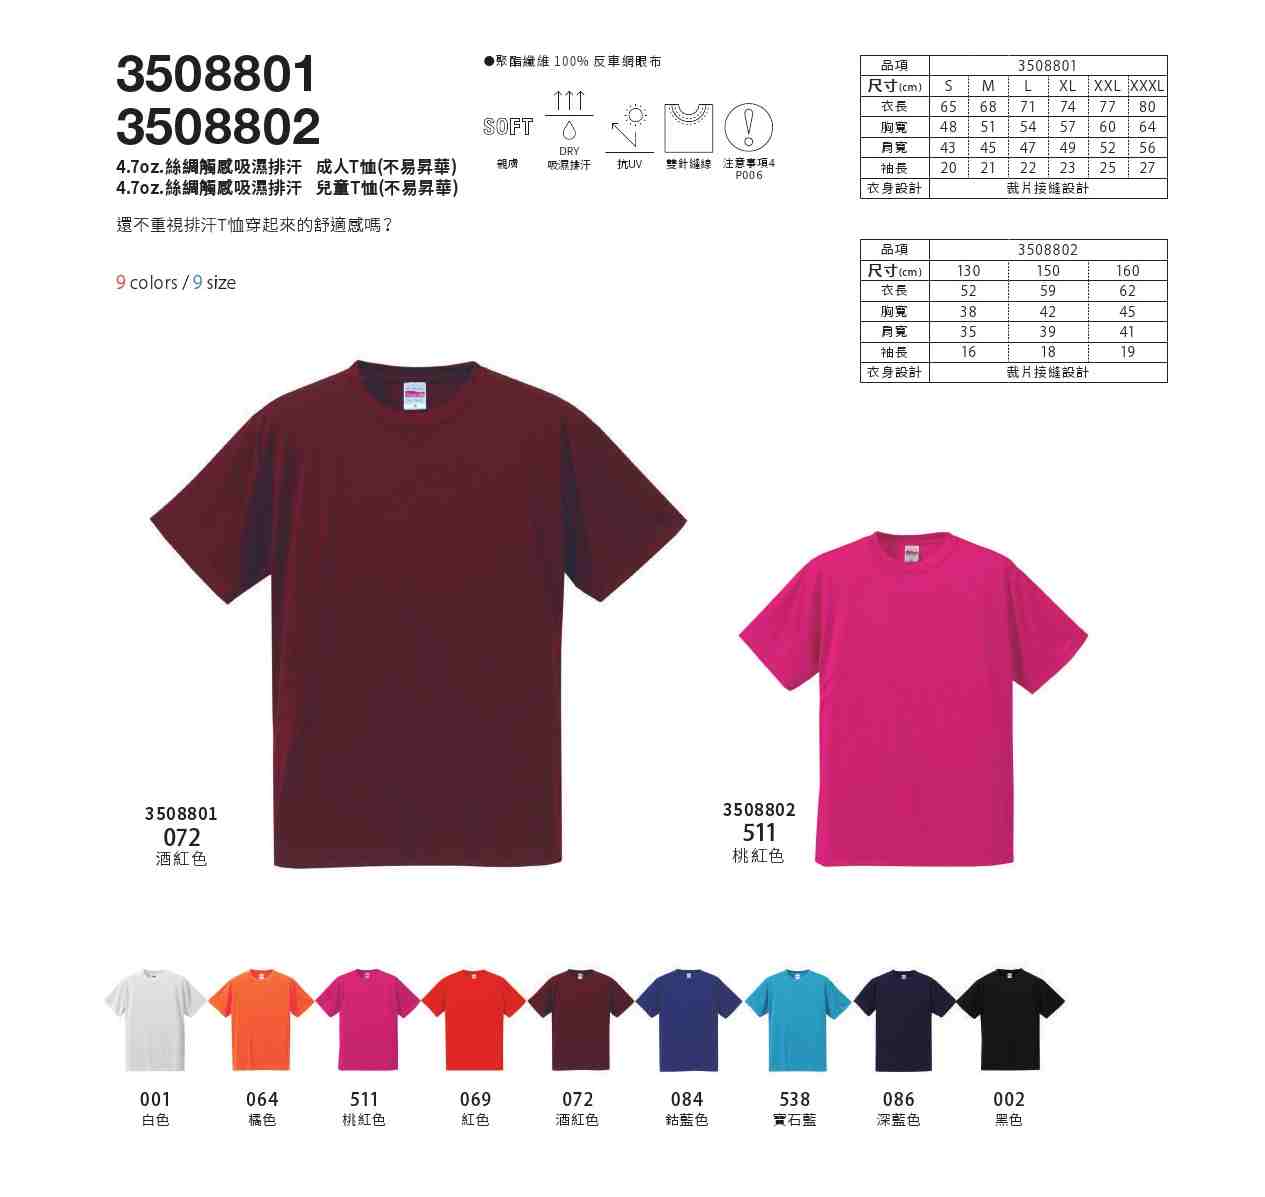 3508801 - 4.7oz.絲網觸感吸濕排成人T恤(不易昇華)